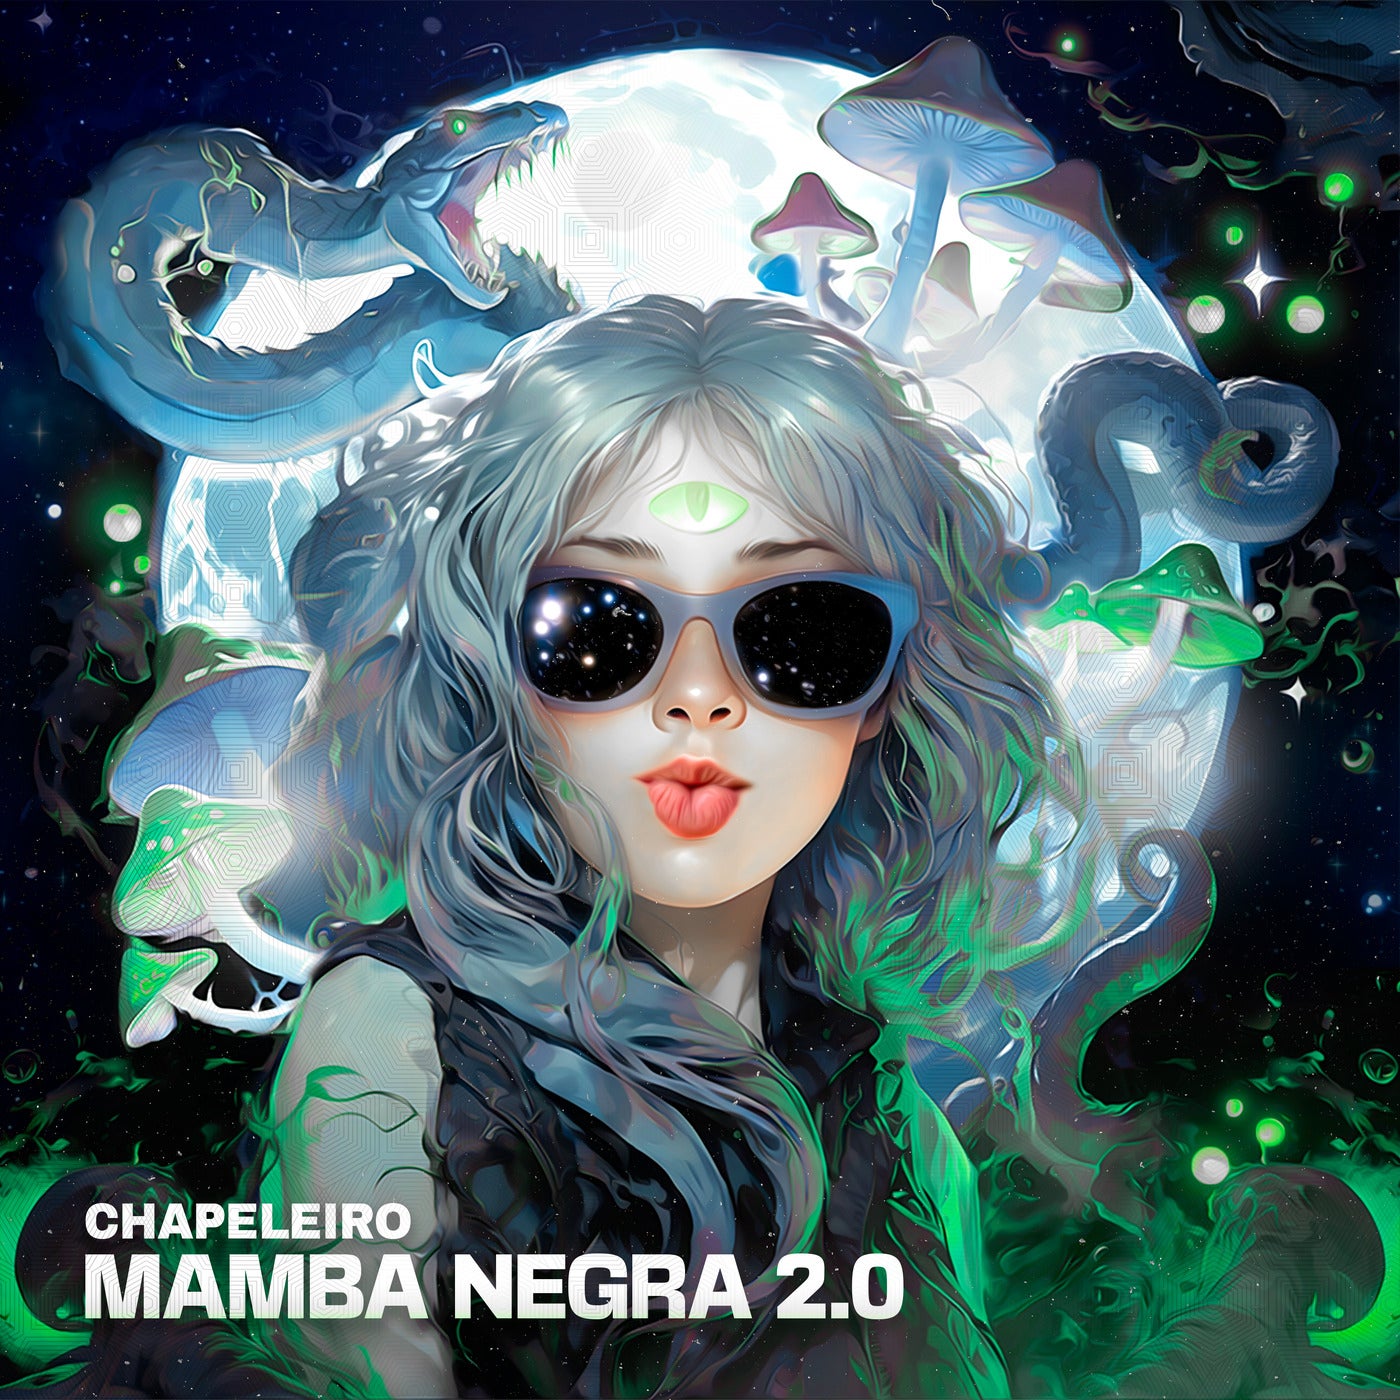 Mamba Negra 2.0